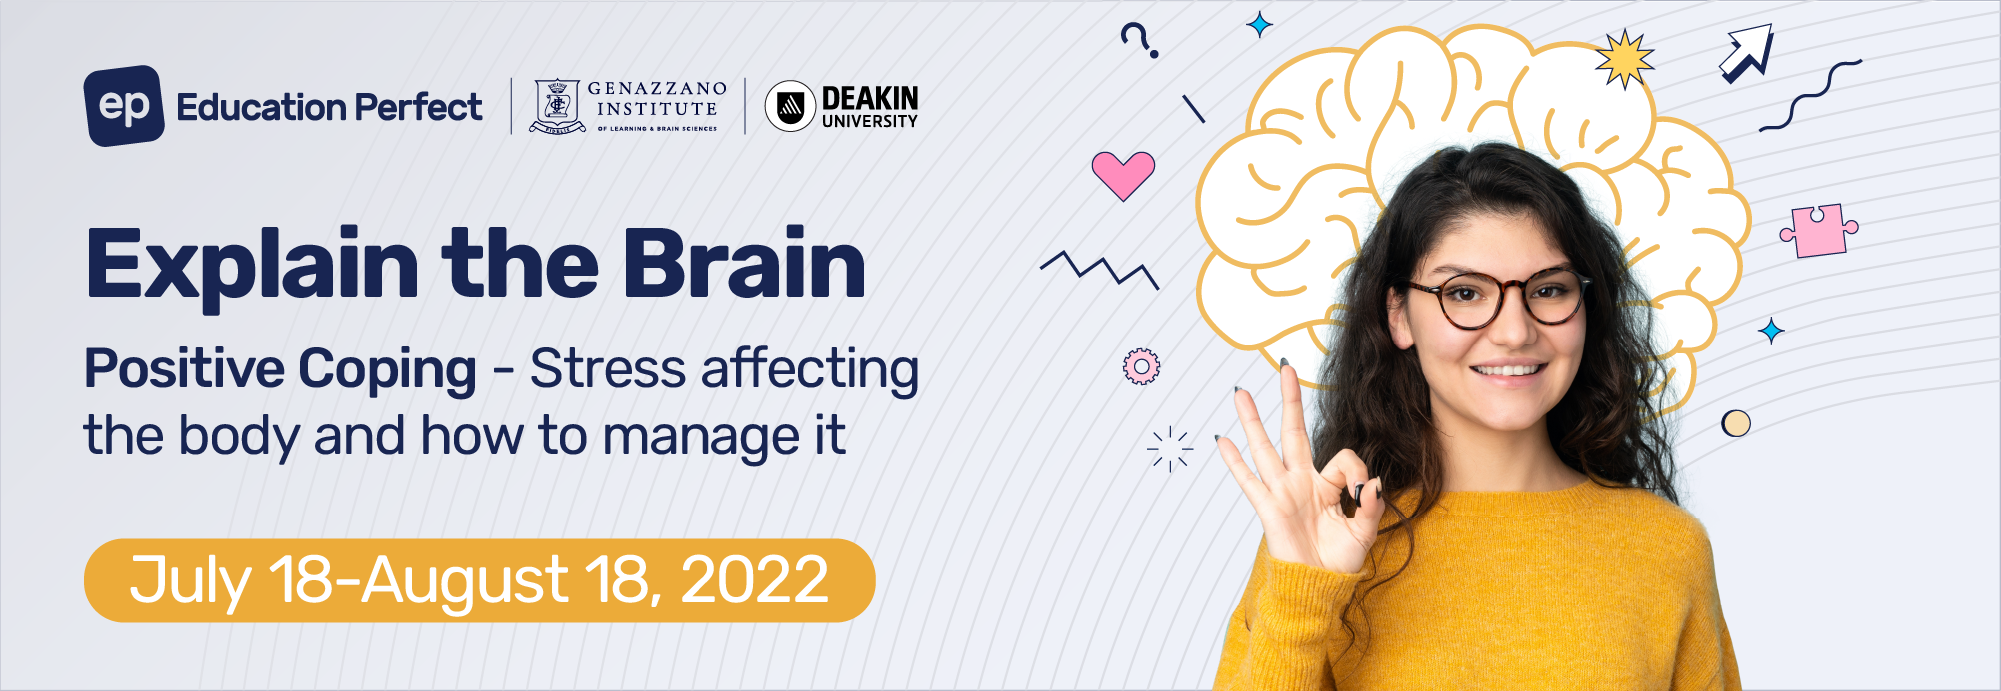 Explain-the-Brain-2022-Header-2000x690-Girl-1